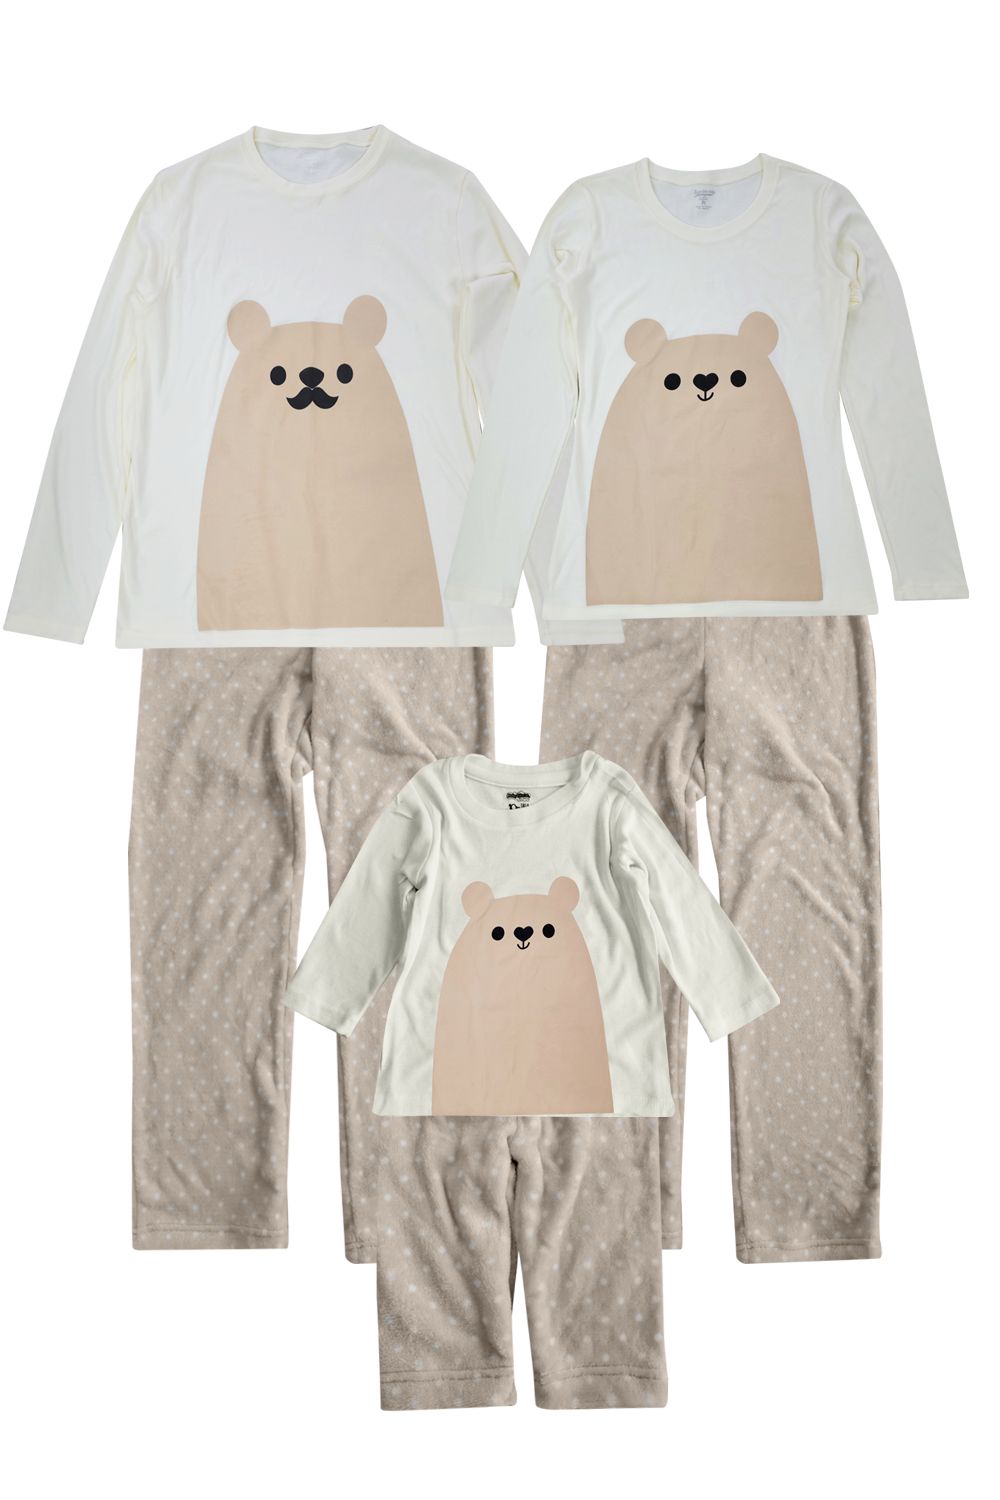 Pijama Polar 1 a 10 Años. Oso